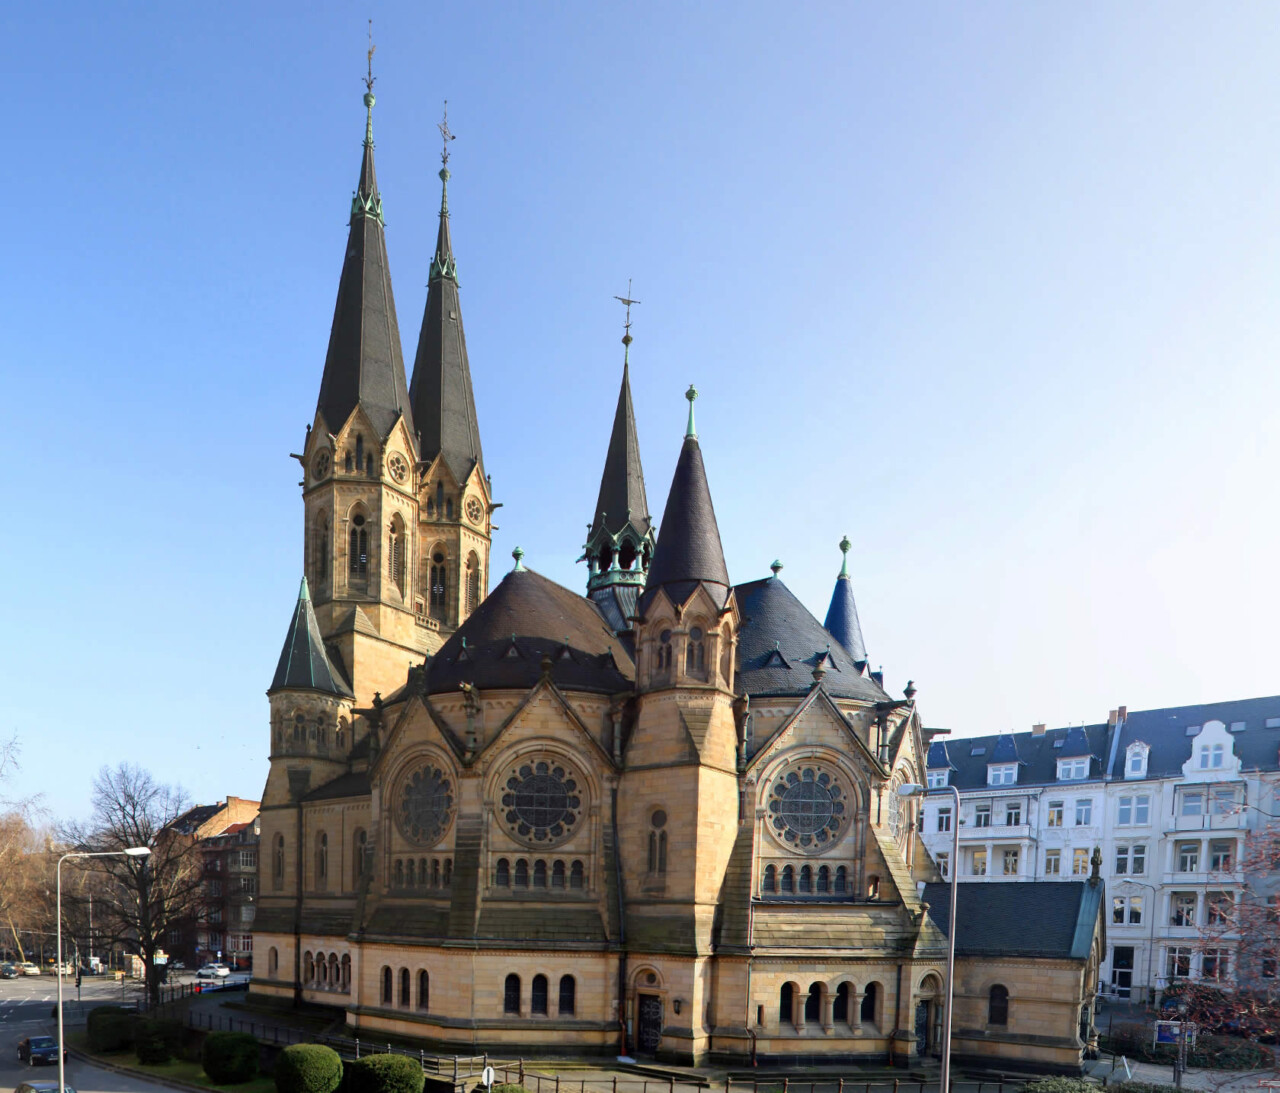 Ringkirche Wiesbaden - Dort gibt Georg Magirius laut Dr. Sunny Panitz mit seinem Buch "Traumhaft schlägt das Herz der Liebe ein magisches Versprechen"